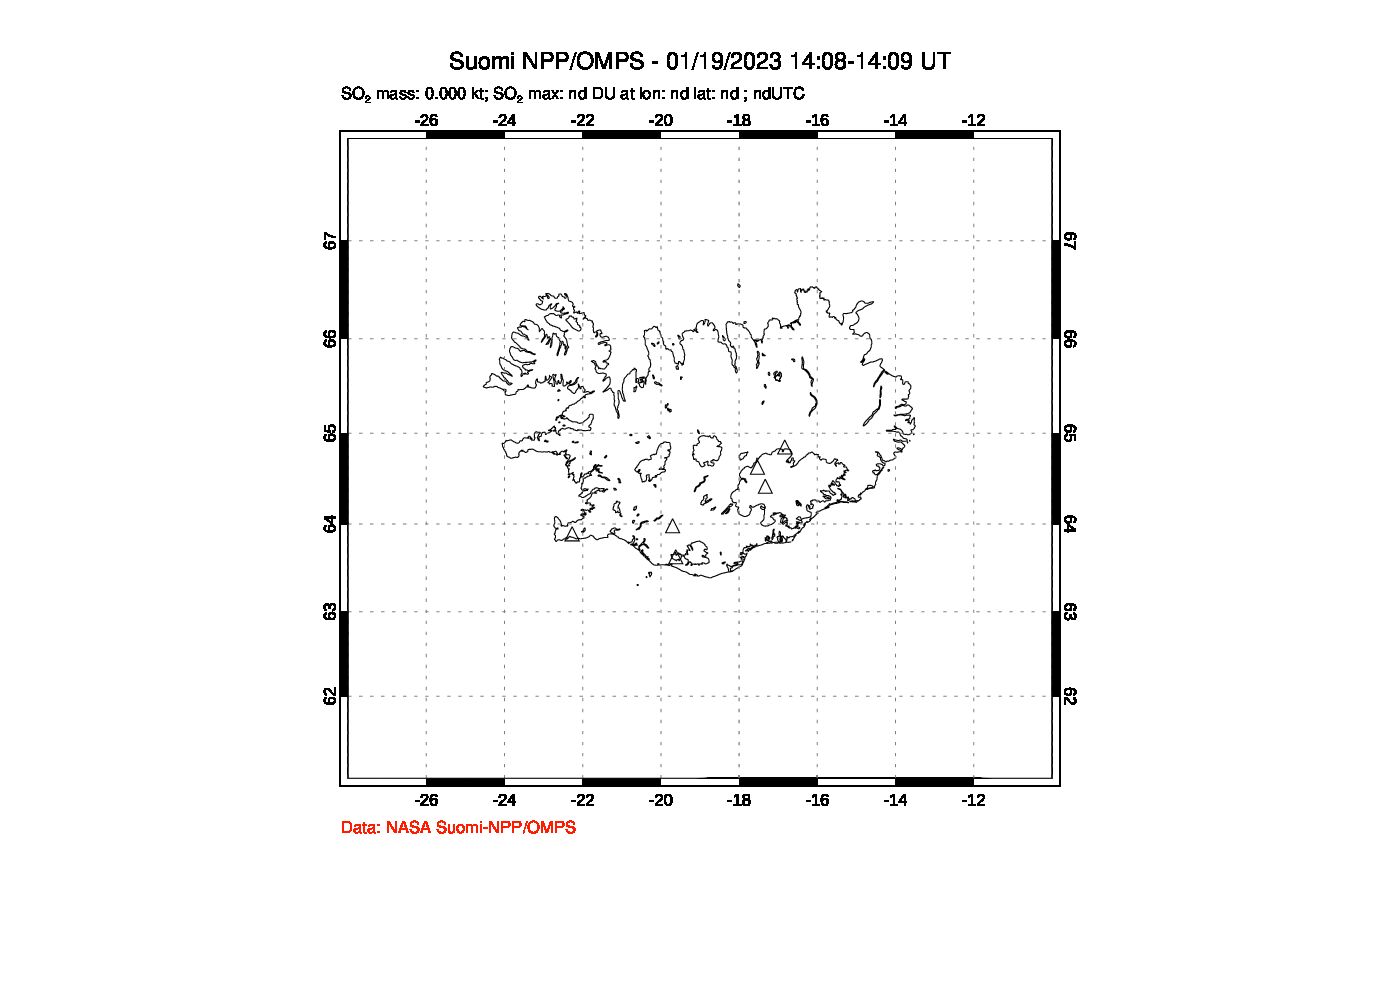 A sulfur dioxide image over Iceland on Jan 19, 2023.